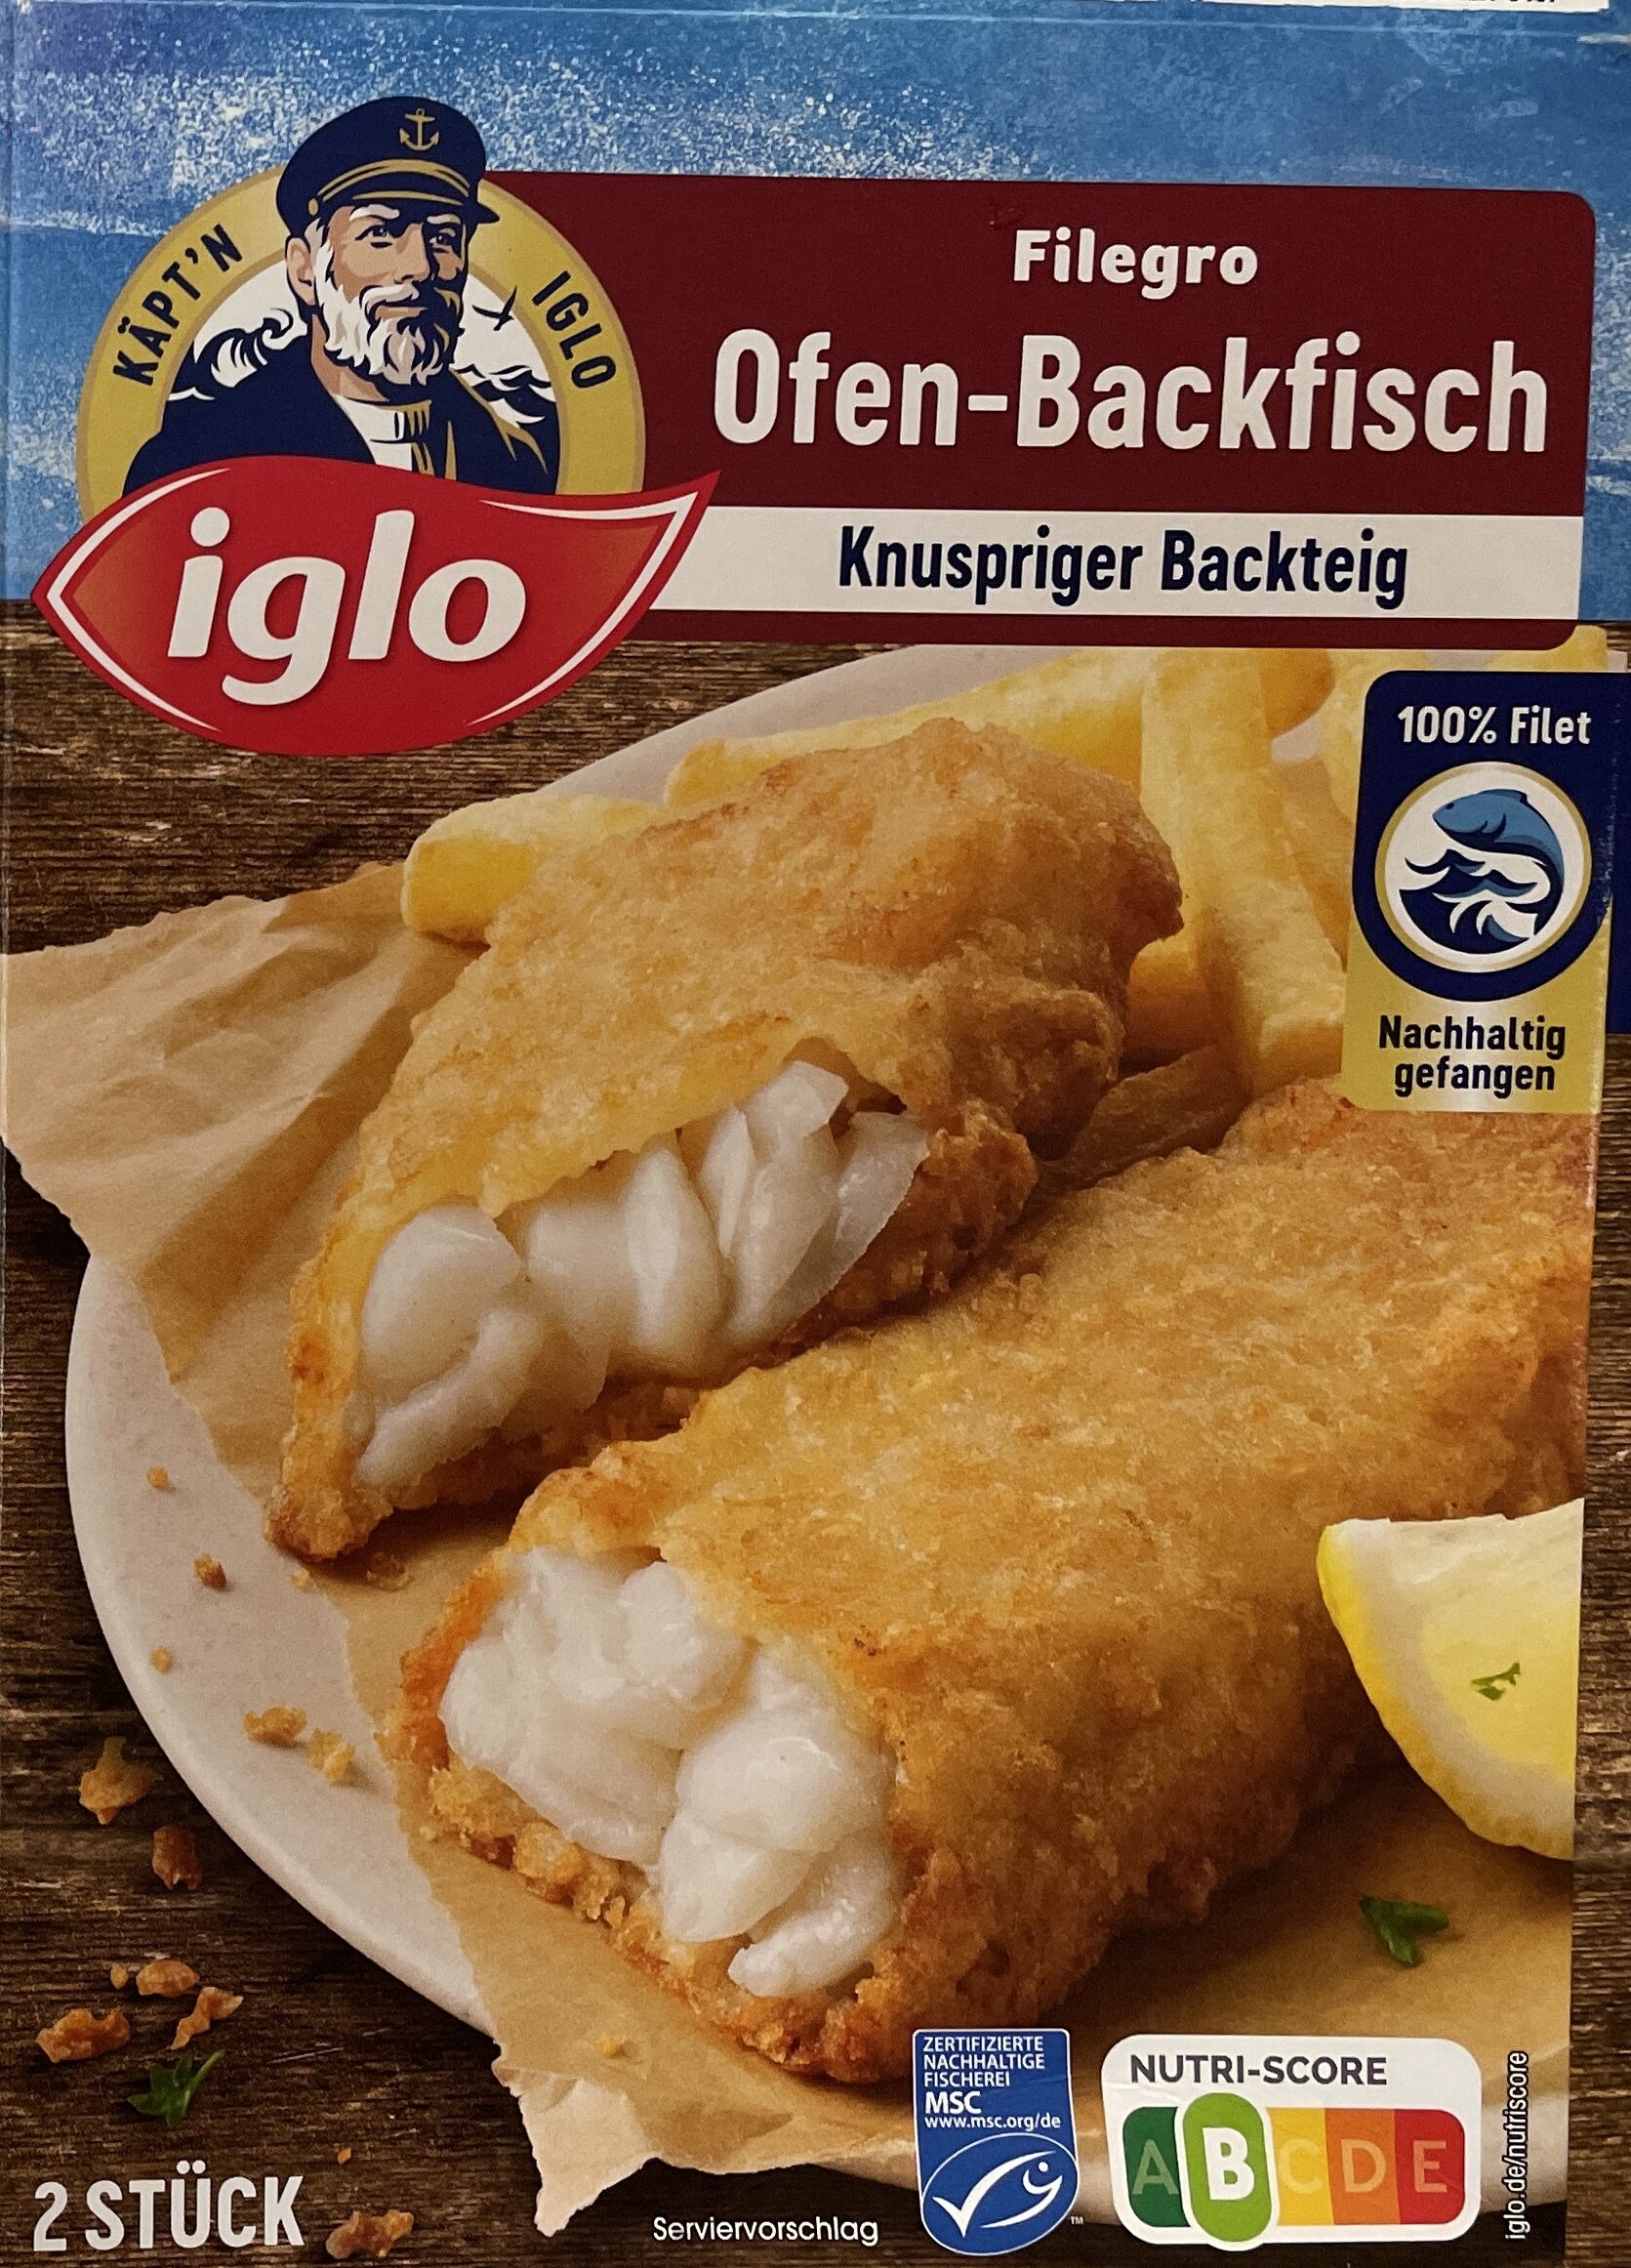 Filegro Ofen-Backfisch - Produkt